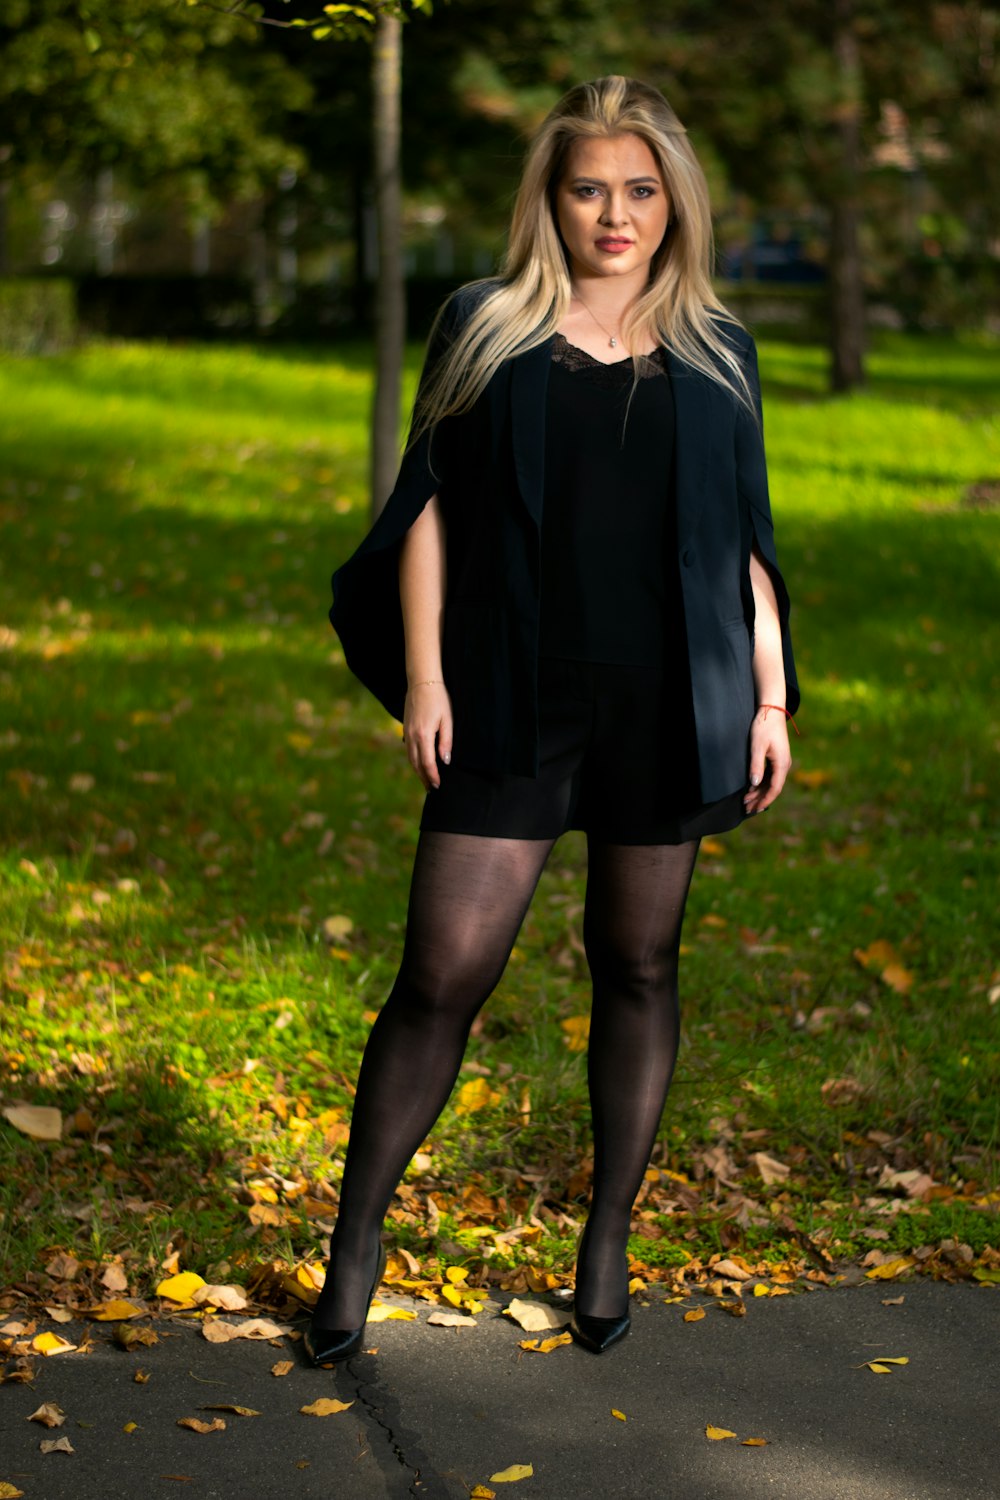 낮 동안 푸른 잔디밭에 서 있는 검은 드레스를 입은 여자